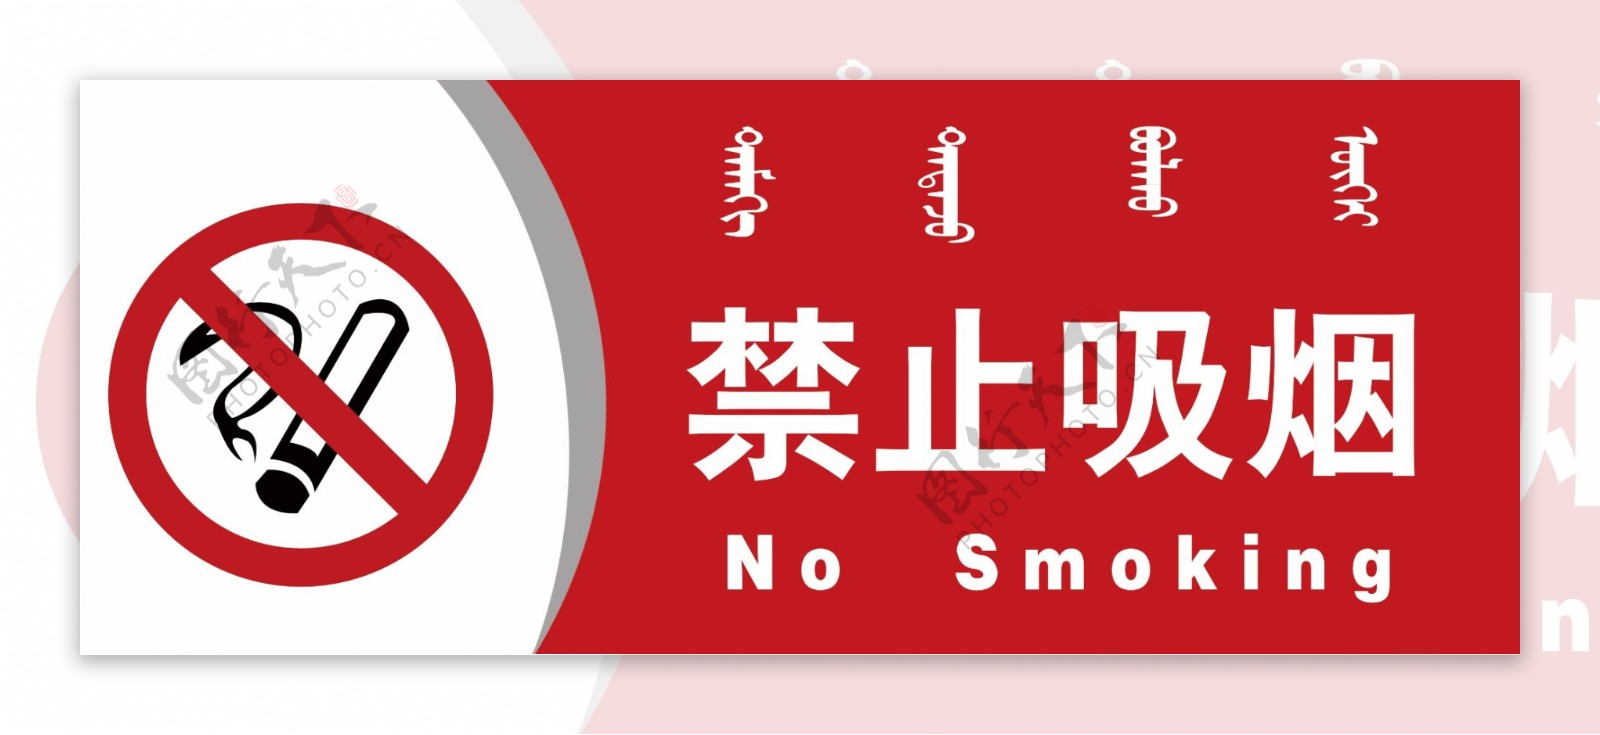 禁止吸烟蒙汉双语提示牌